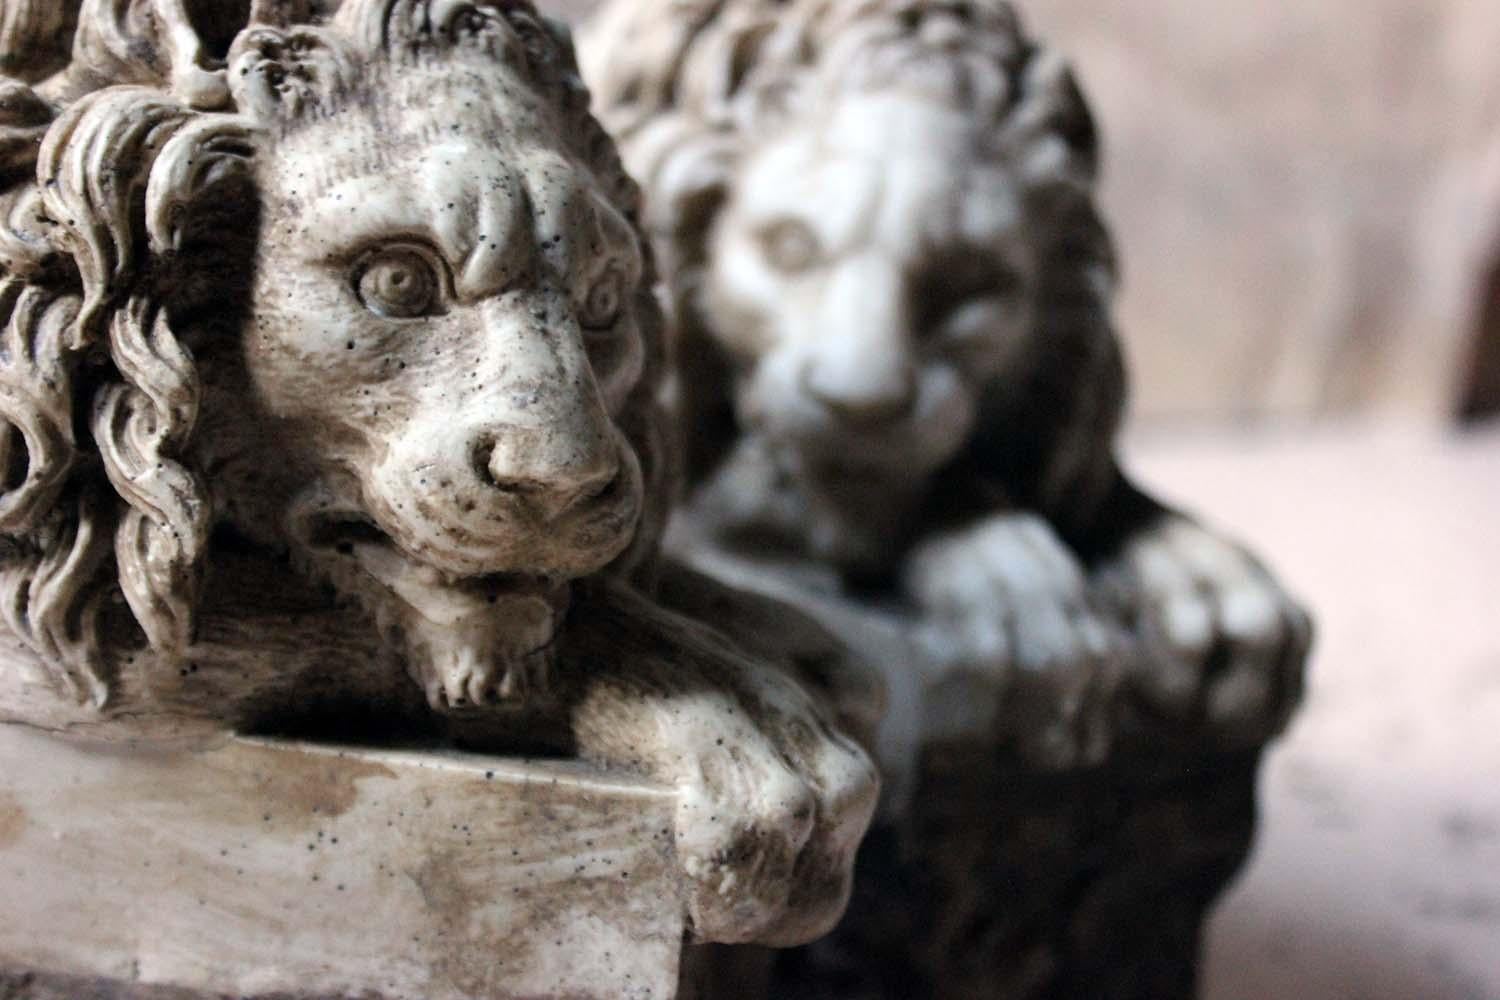 Nach Antonio Canova (1757-1822), die wohlproportionierten und fein modellierten Steinmodelle (möglicherweise aus Marmor?) von liegenden Löwen, beide wachsam, auf grob behauenen Steinsockeln, die aus dem späten 19. Jahrhundert stammen.
 
Die